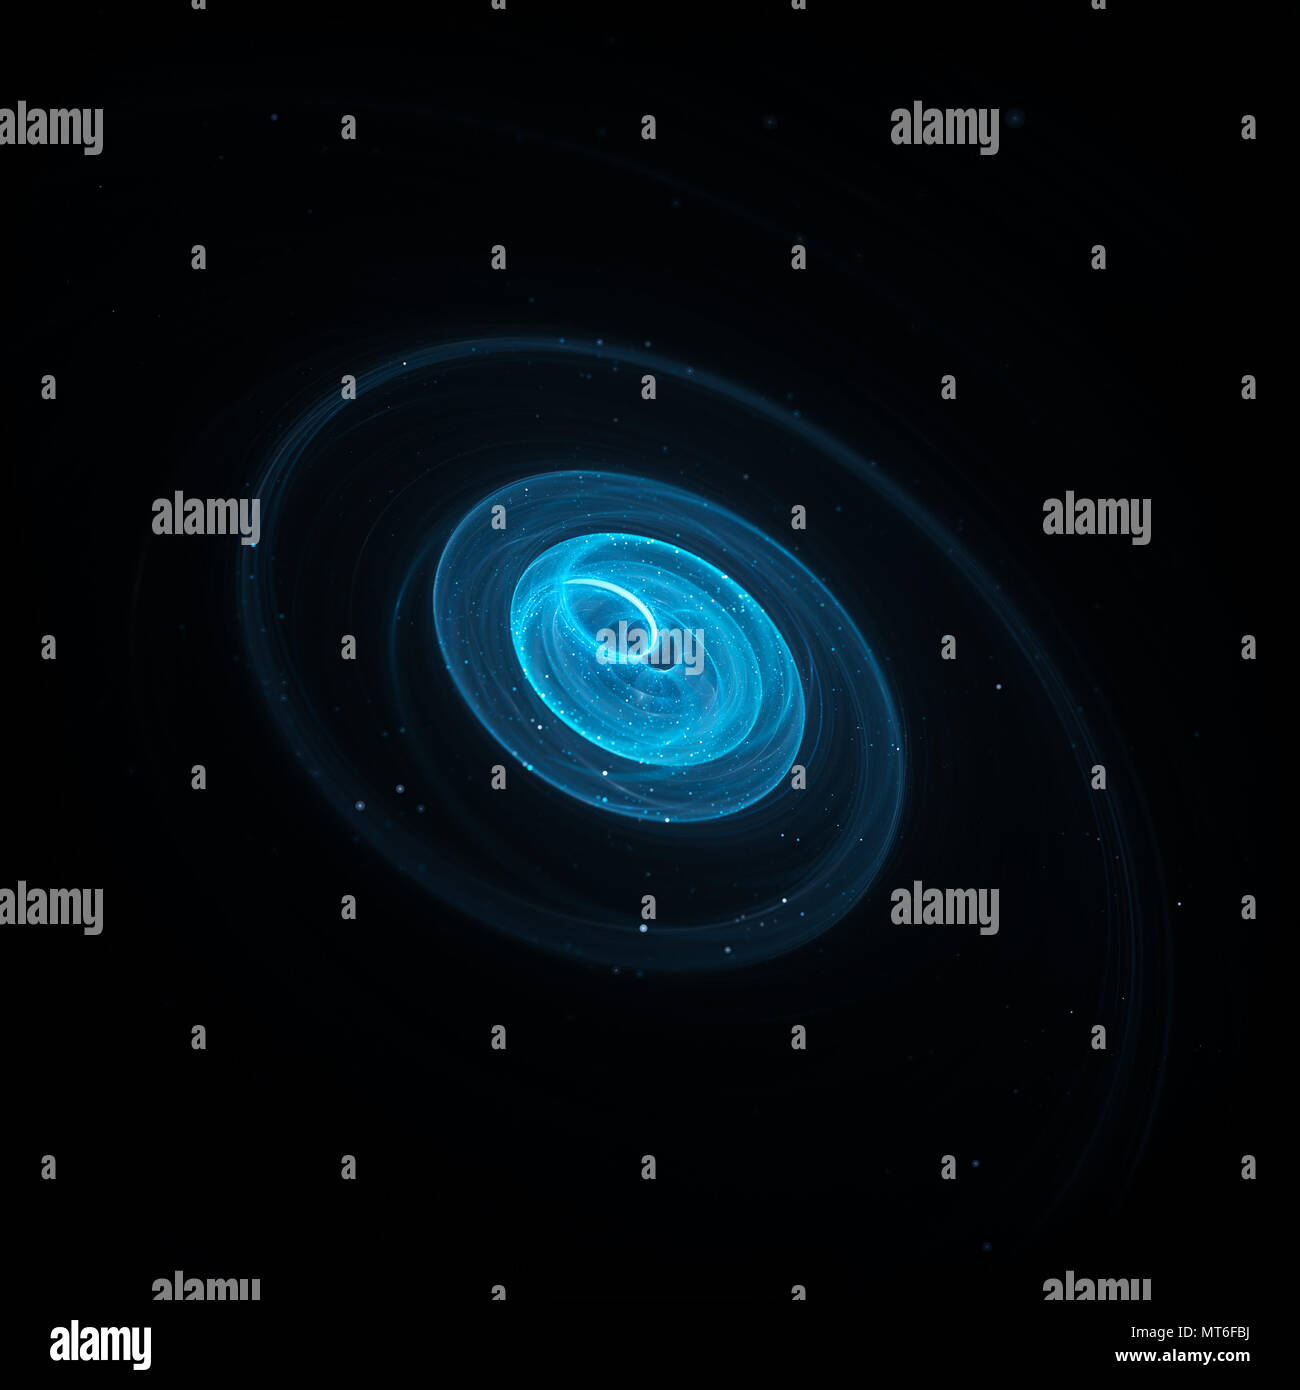 Spirale galaktischen Bahnen im Raum mit Sternen, isoliert auf Schwarz, computer-generierte Zusammenfassung Hintergrund, 3D-Rendering Stockfoto